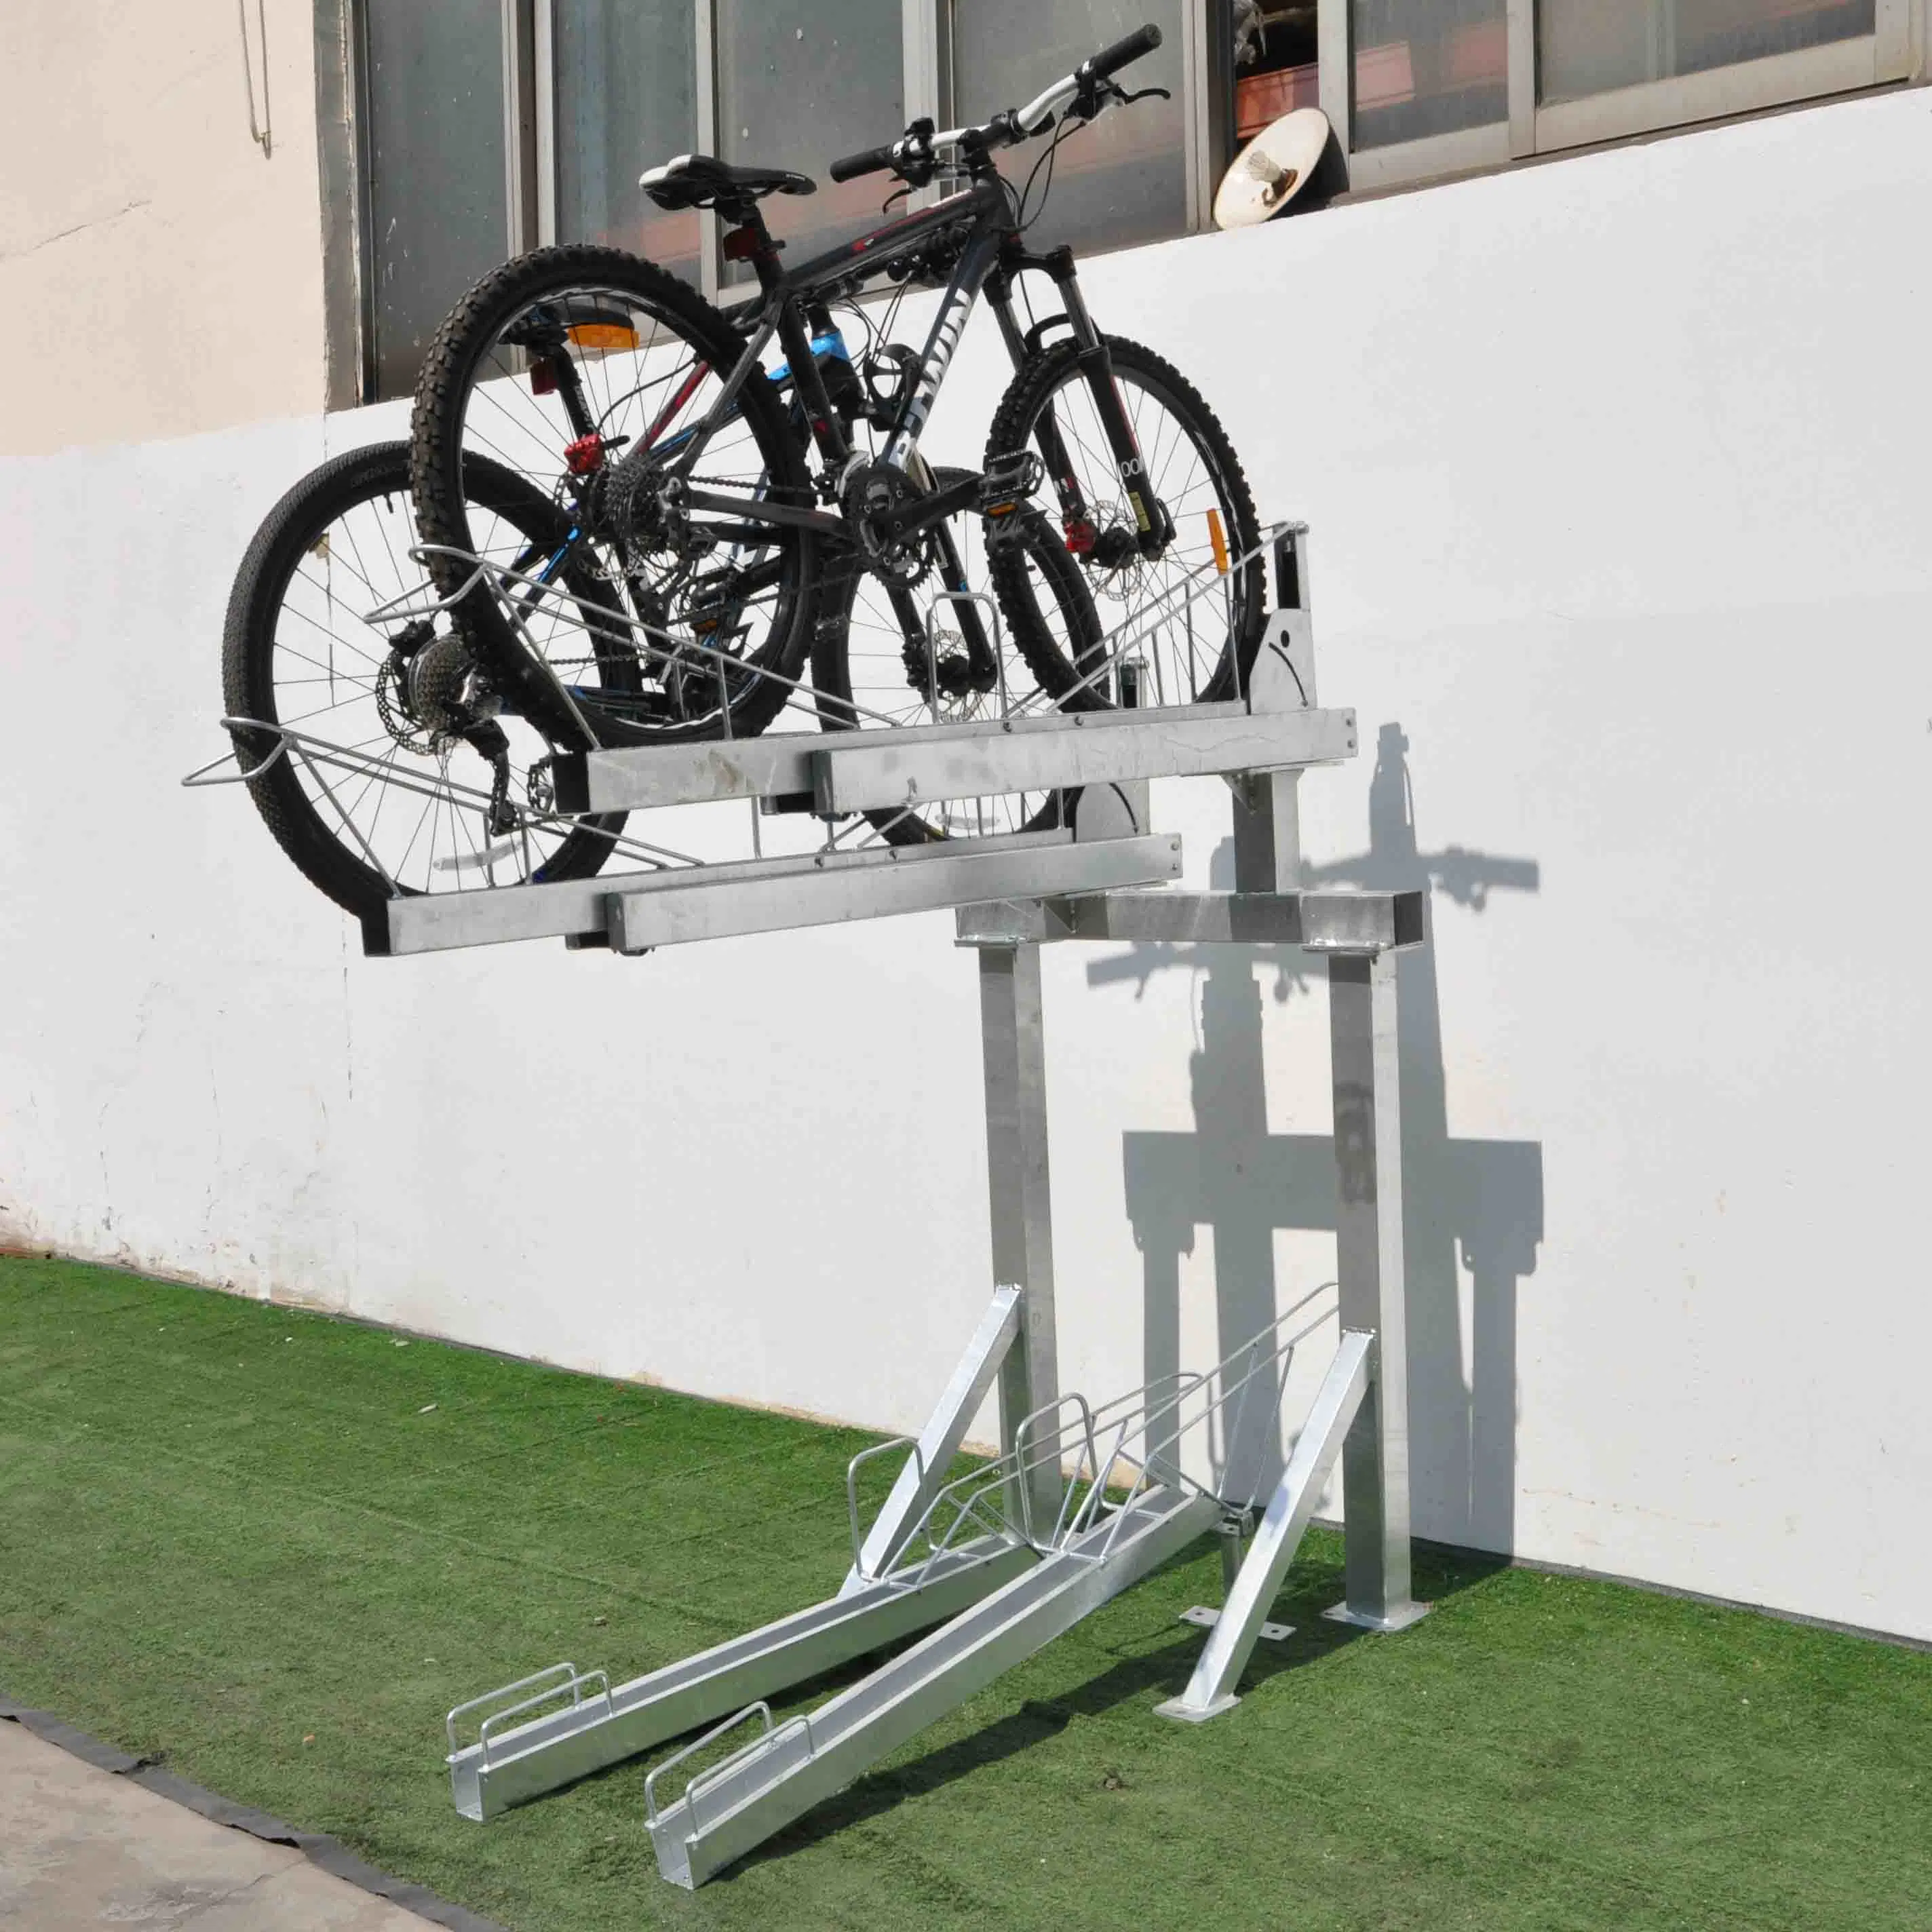 Vertical Bike Storage Floor Parking Storage Bicycle Stand Rack